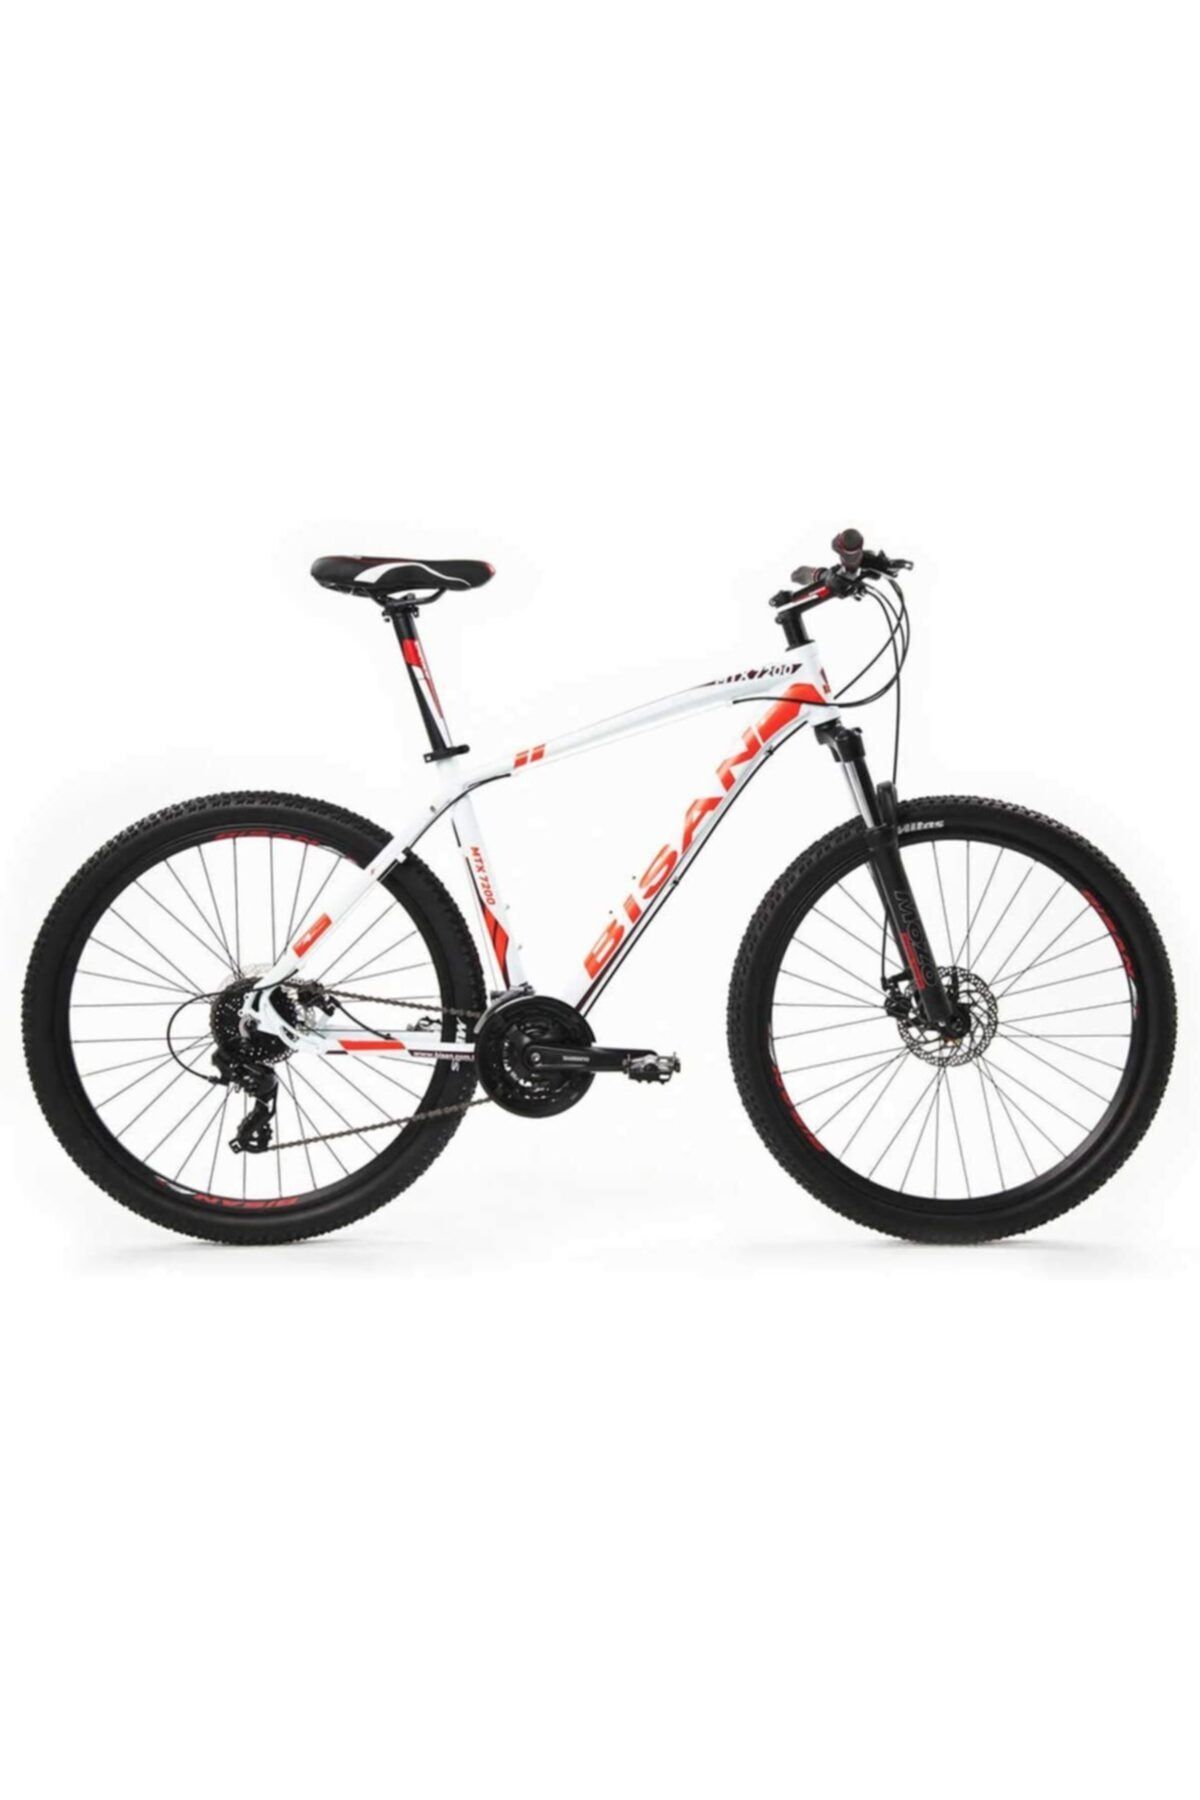 Bisan Mtx 7200 26" Beyaz/kırmızı 46cm Kadro 24 Vites Bisiklet